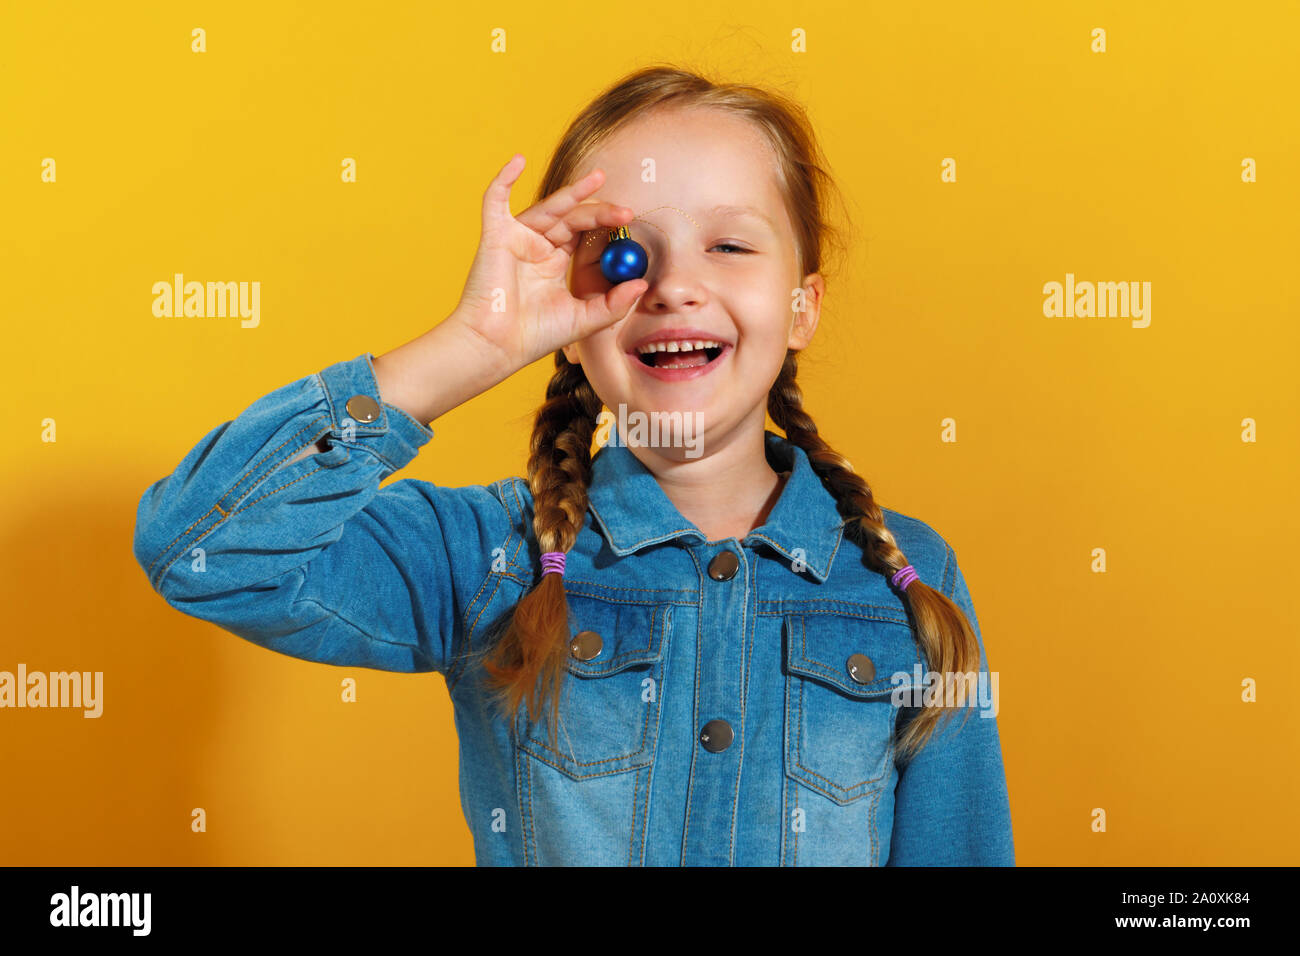 Petite fille joyeuse avec une boule de noël jouet sur un fond jaune. Le concept de Noël, nouvel an. Banque D'Images